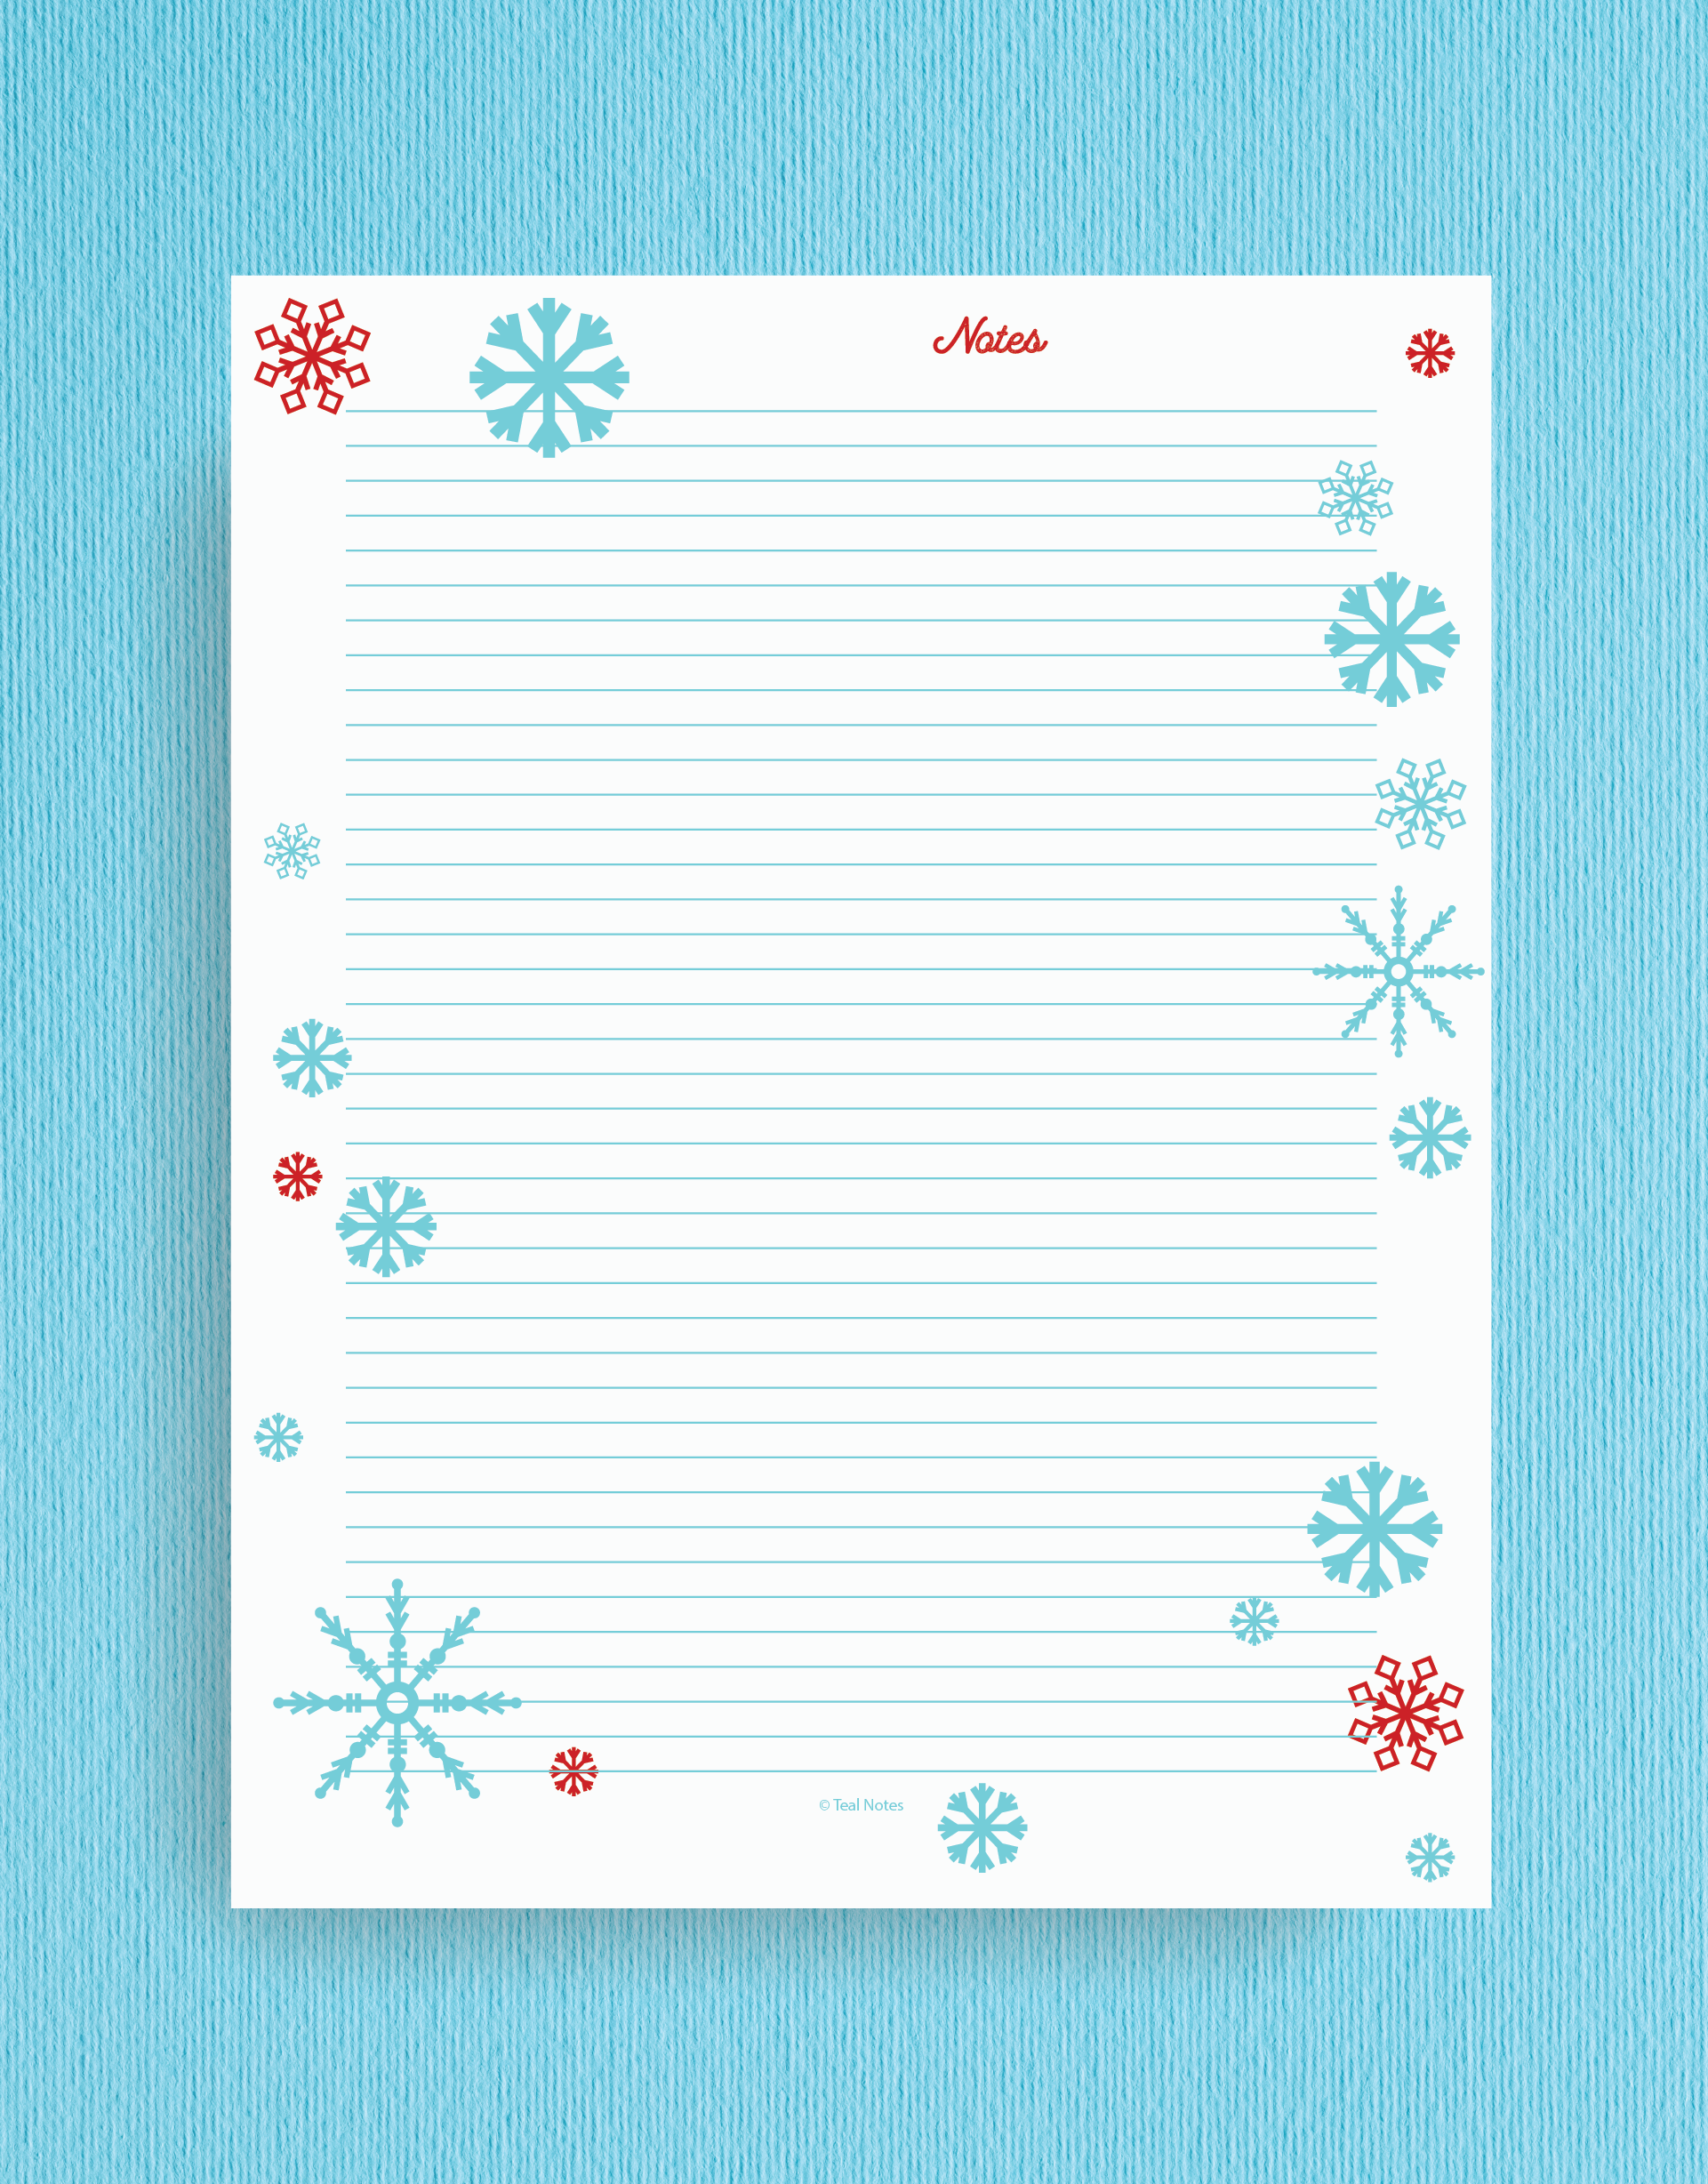 Printable Christmas Planner To Organize the holidays